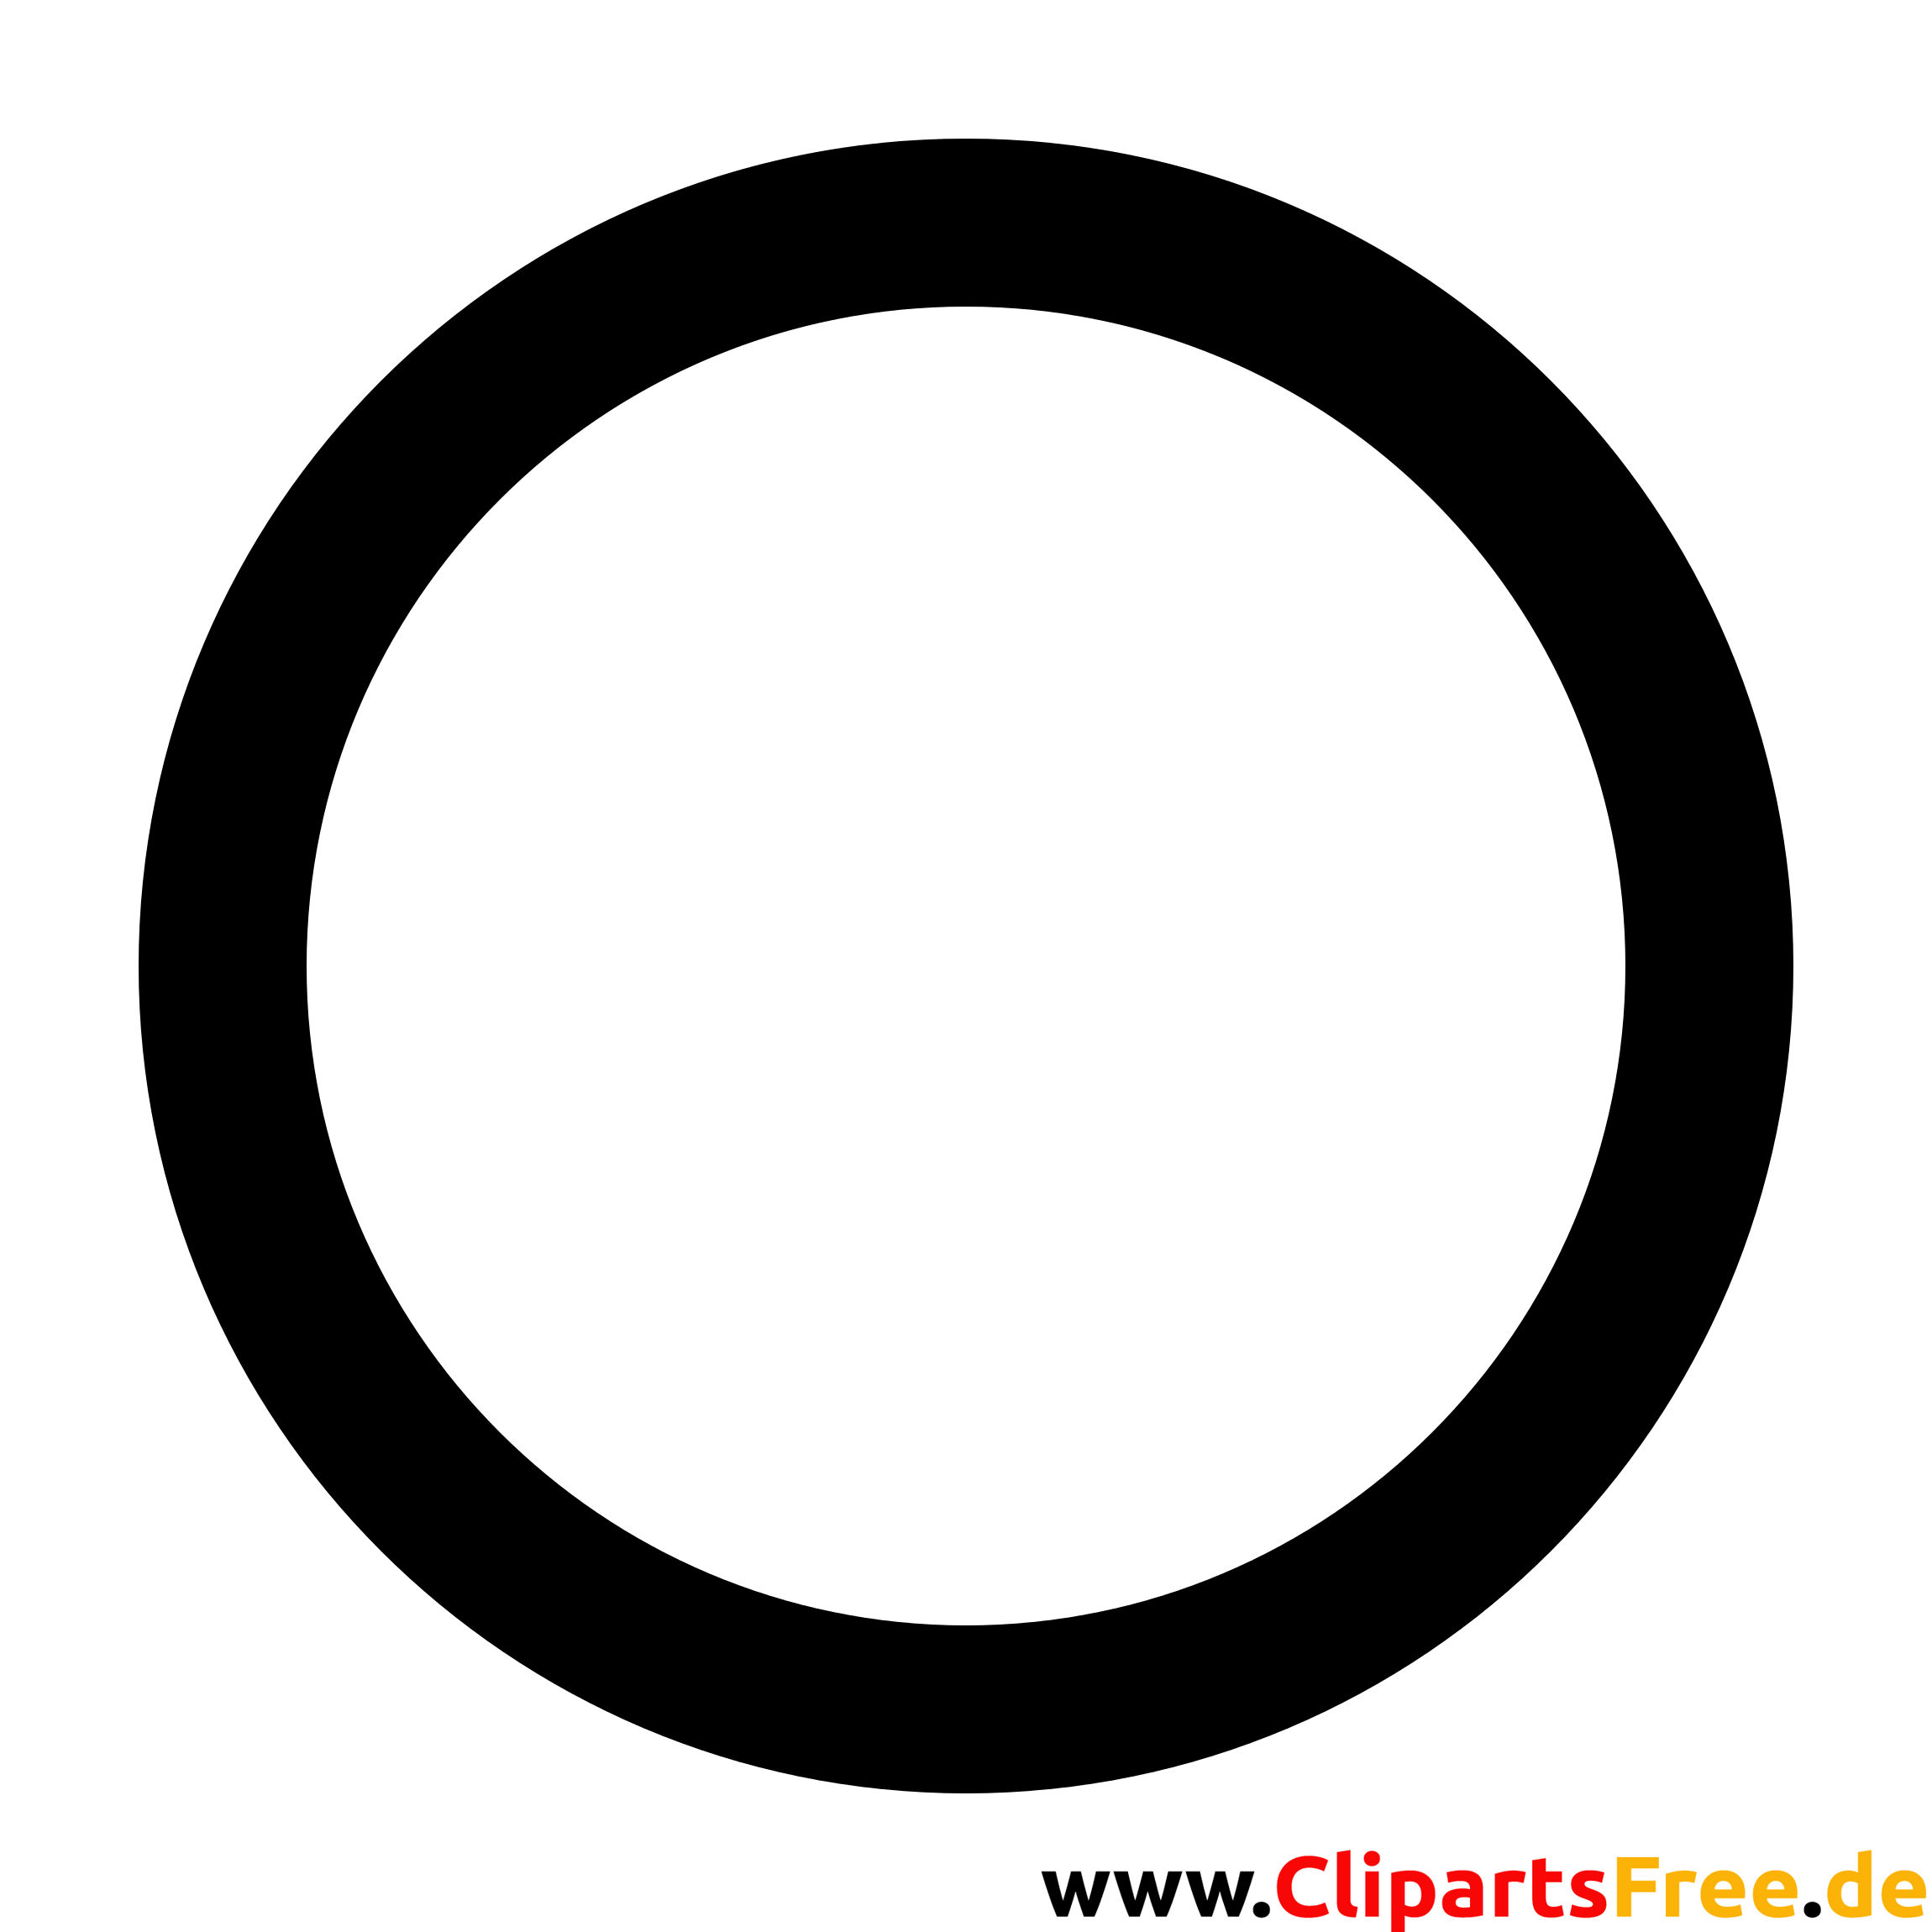 Cercle clipart, image, graphique, illustration noir et blanc